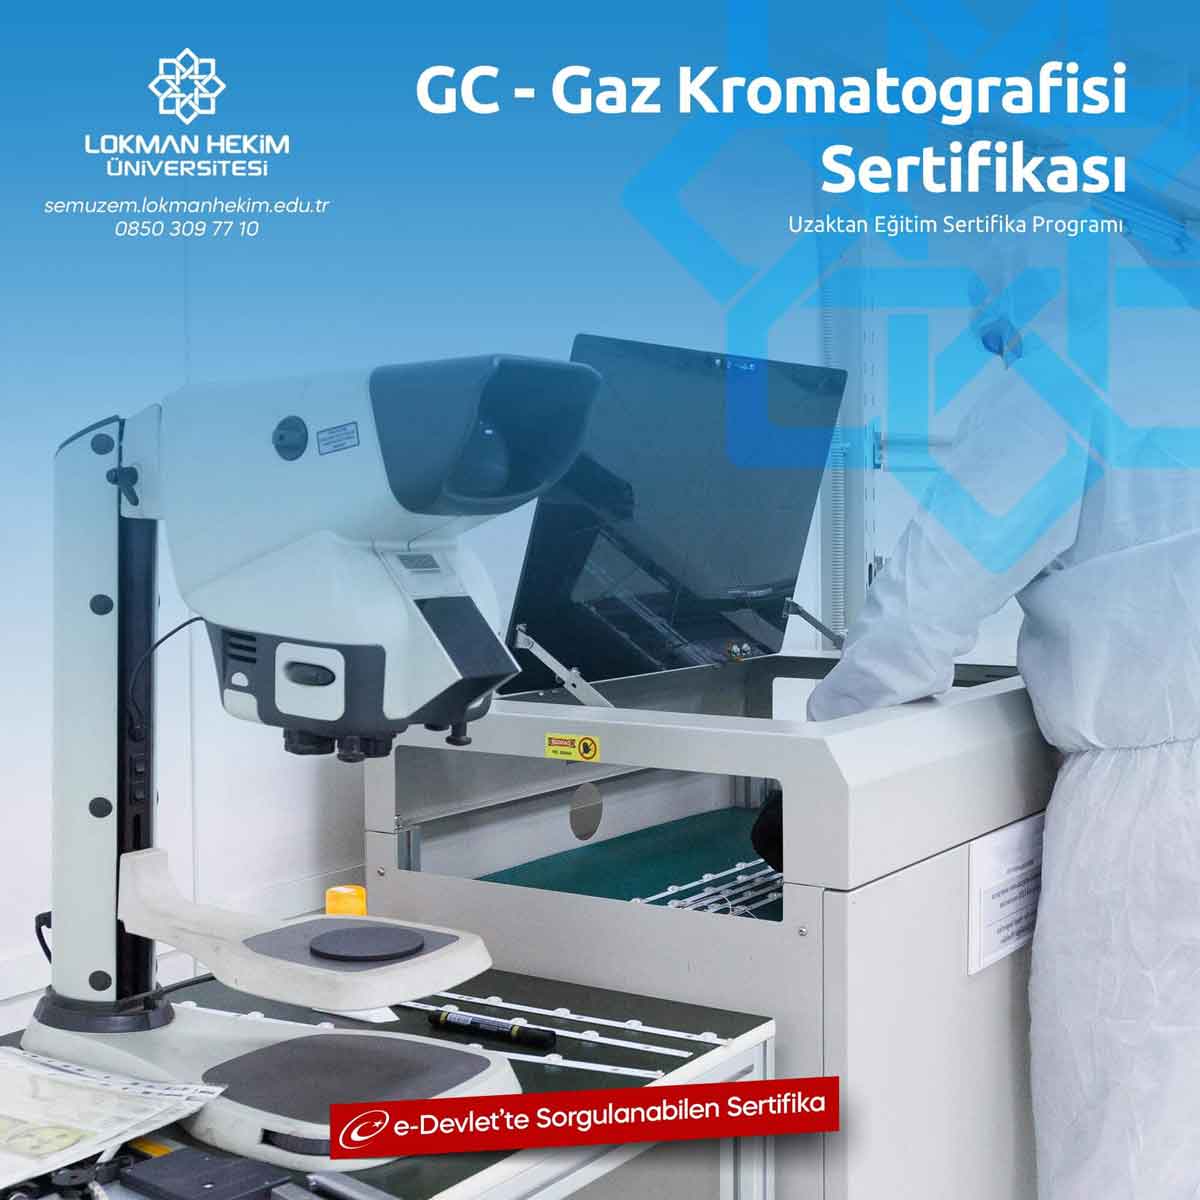 GC - Gaz Kromatografisi Eğitimi Nedir